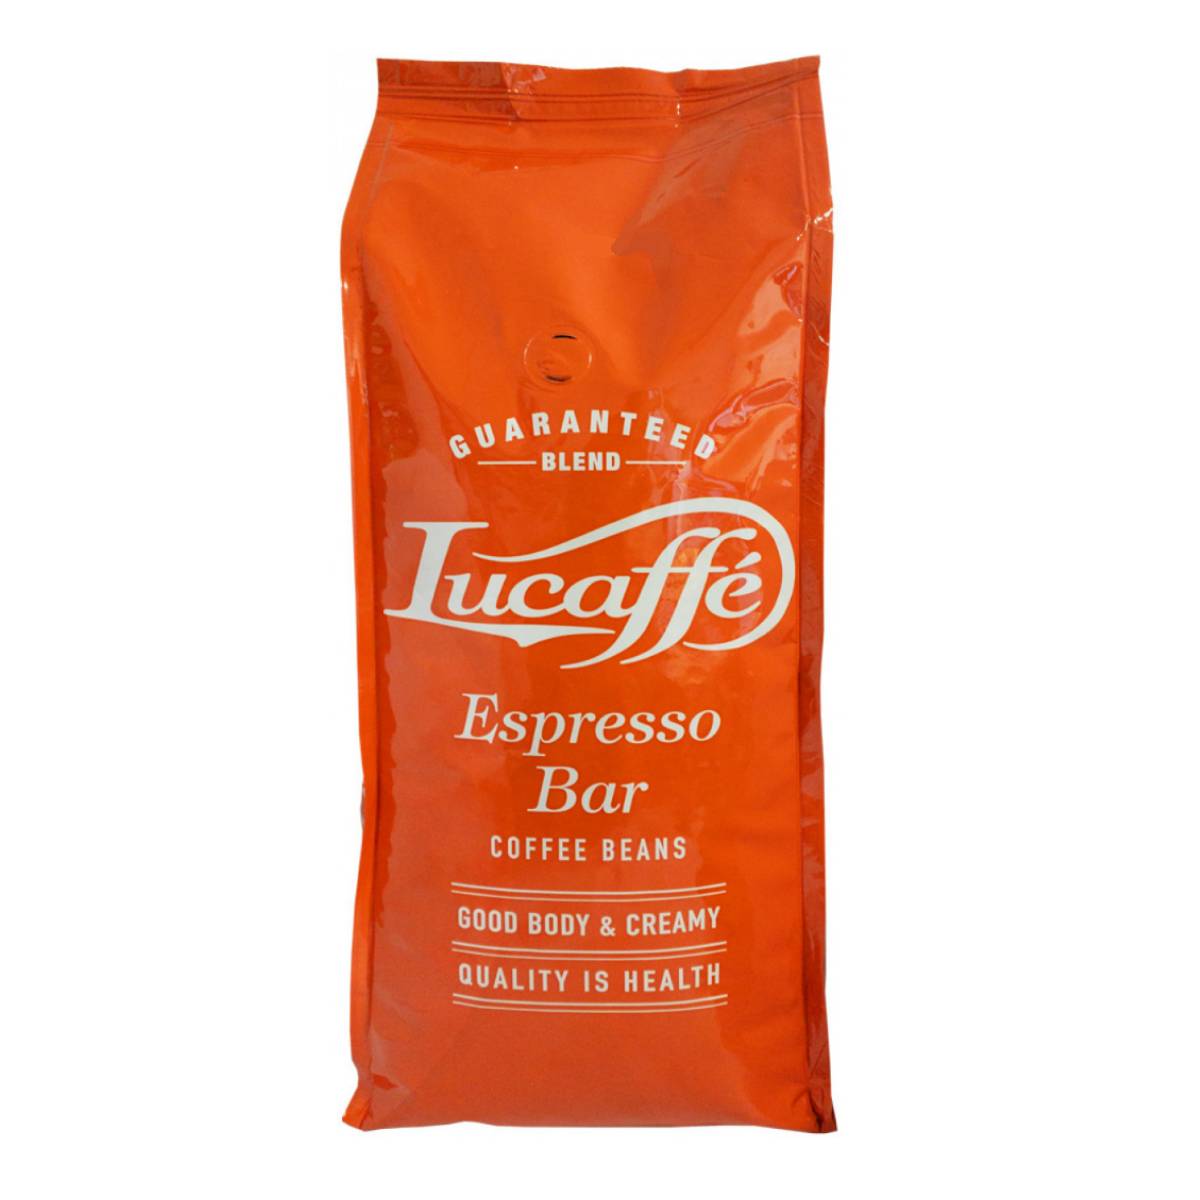 دانه قهوه اسپرسو بار لوکافه - ۱ کیلوگرم